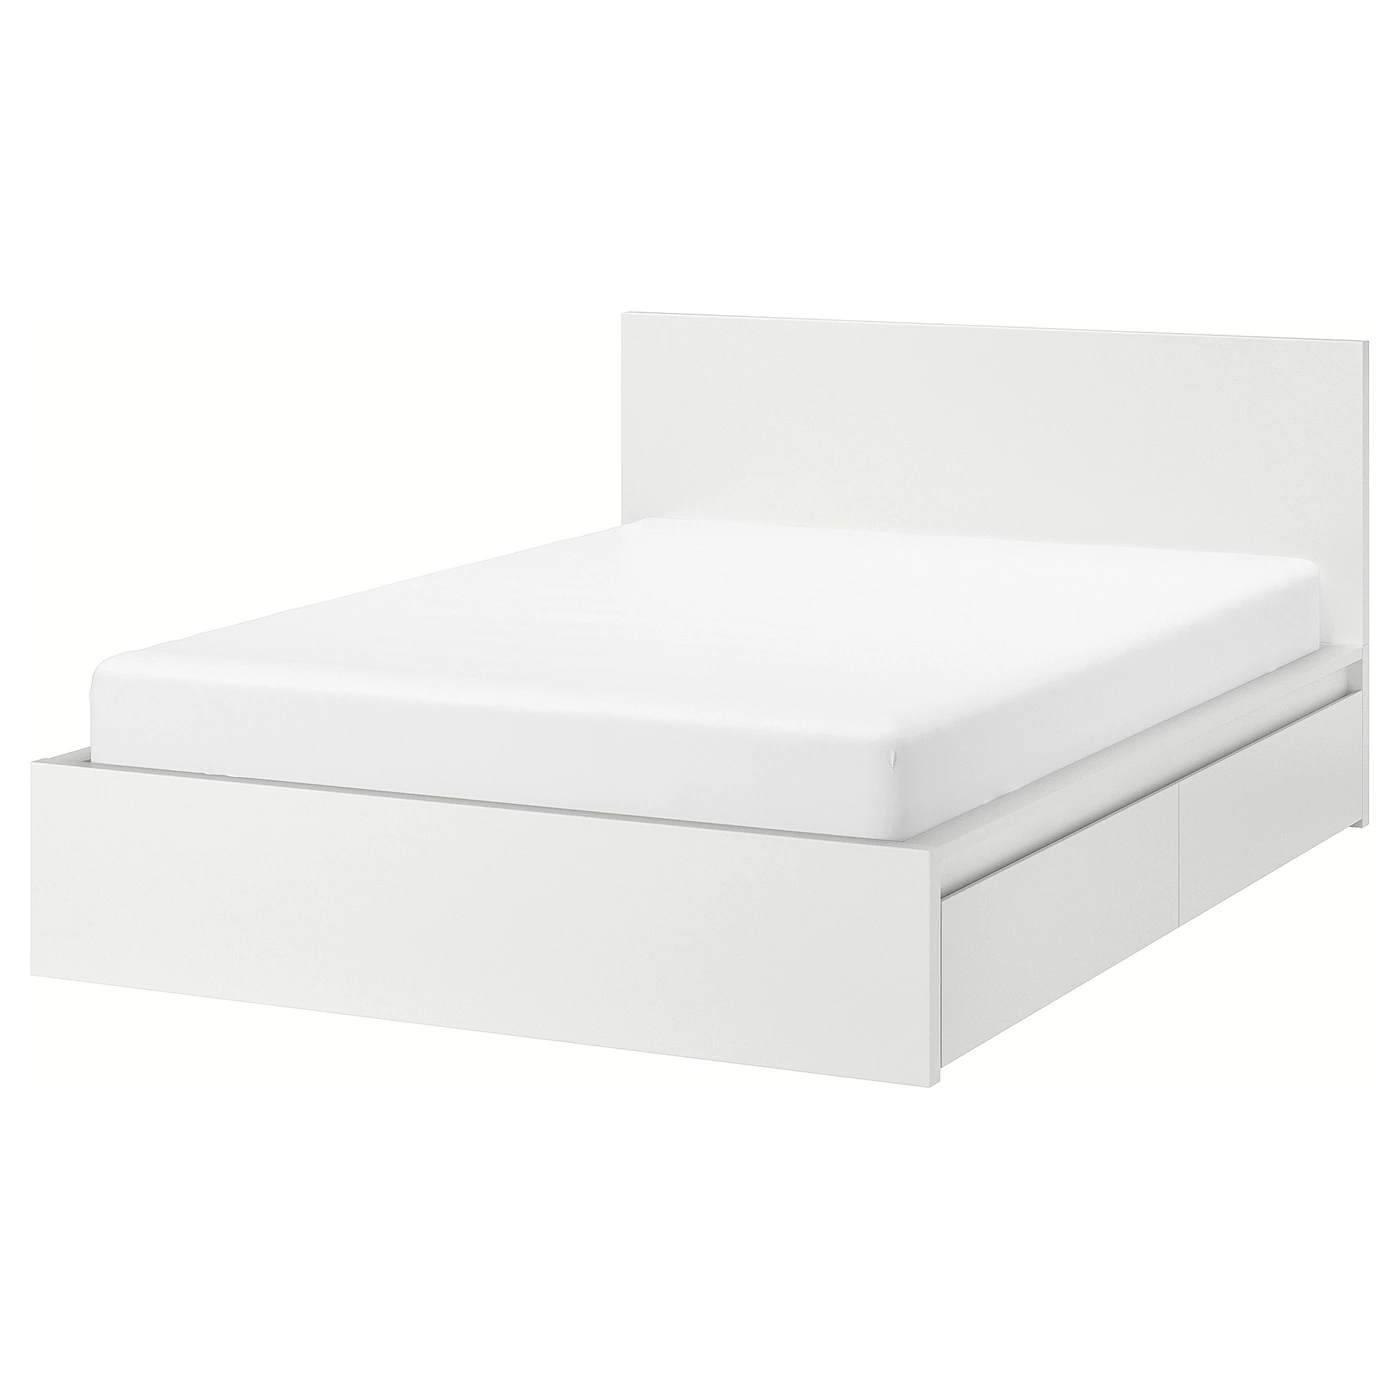 IKEA เตียงนอน 6 ฟุต รุ่นมาล์ม MALM-1